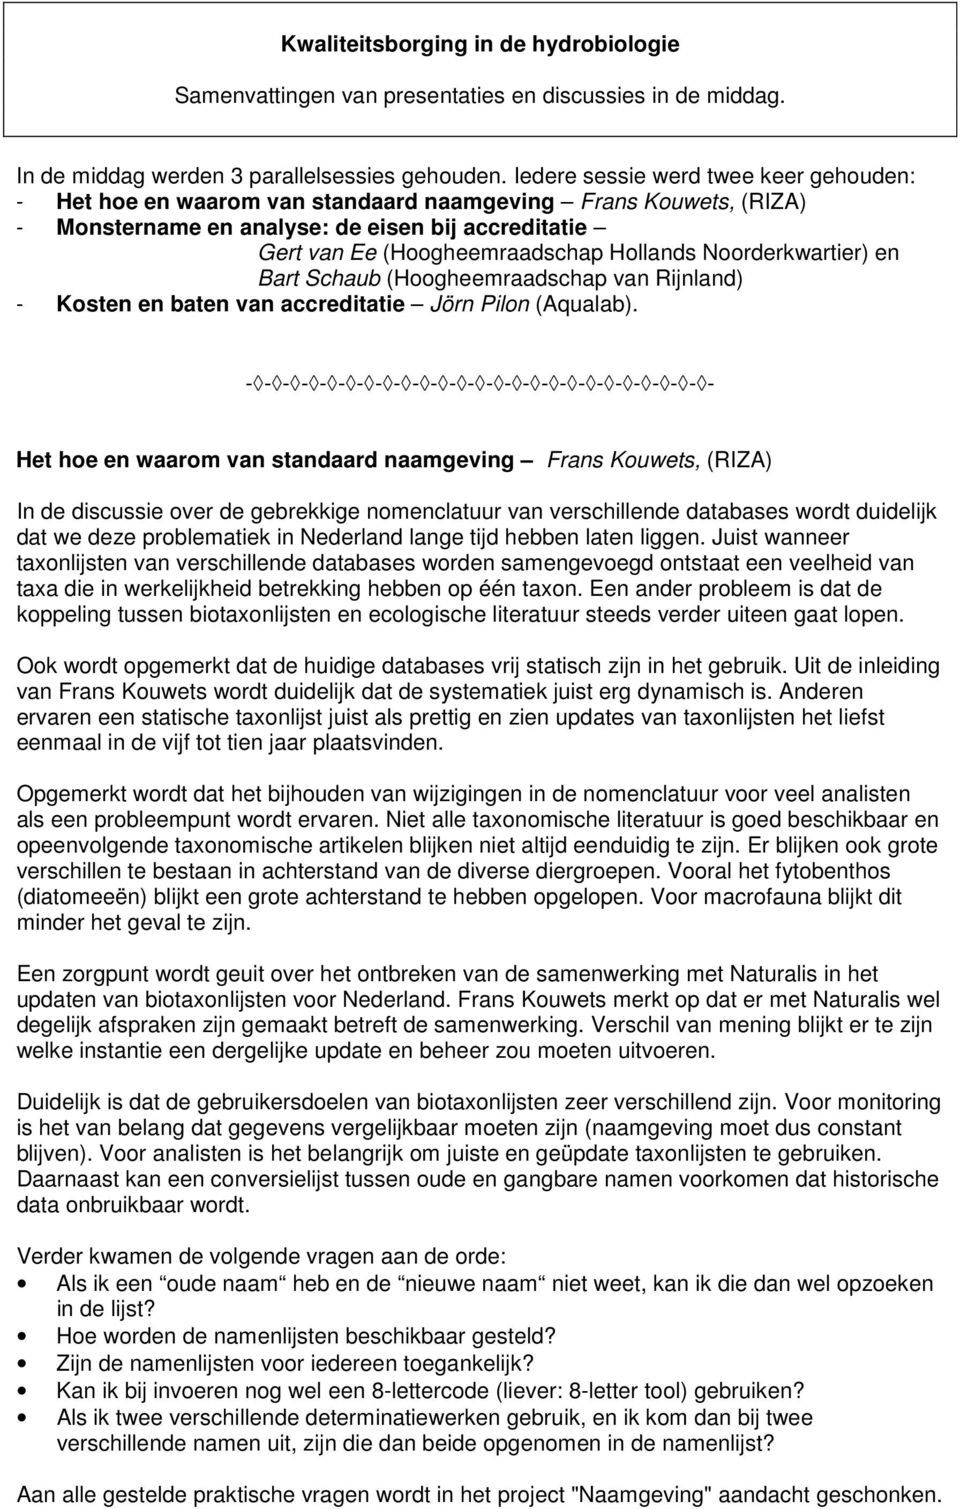 Noorderkwartier) en Bart Schaub (Hoogheemraadschap van Rijnland) - Kosten en baten van accreditatie Jörn Pilon (Aqualab).